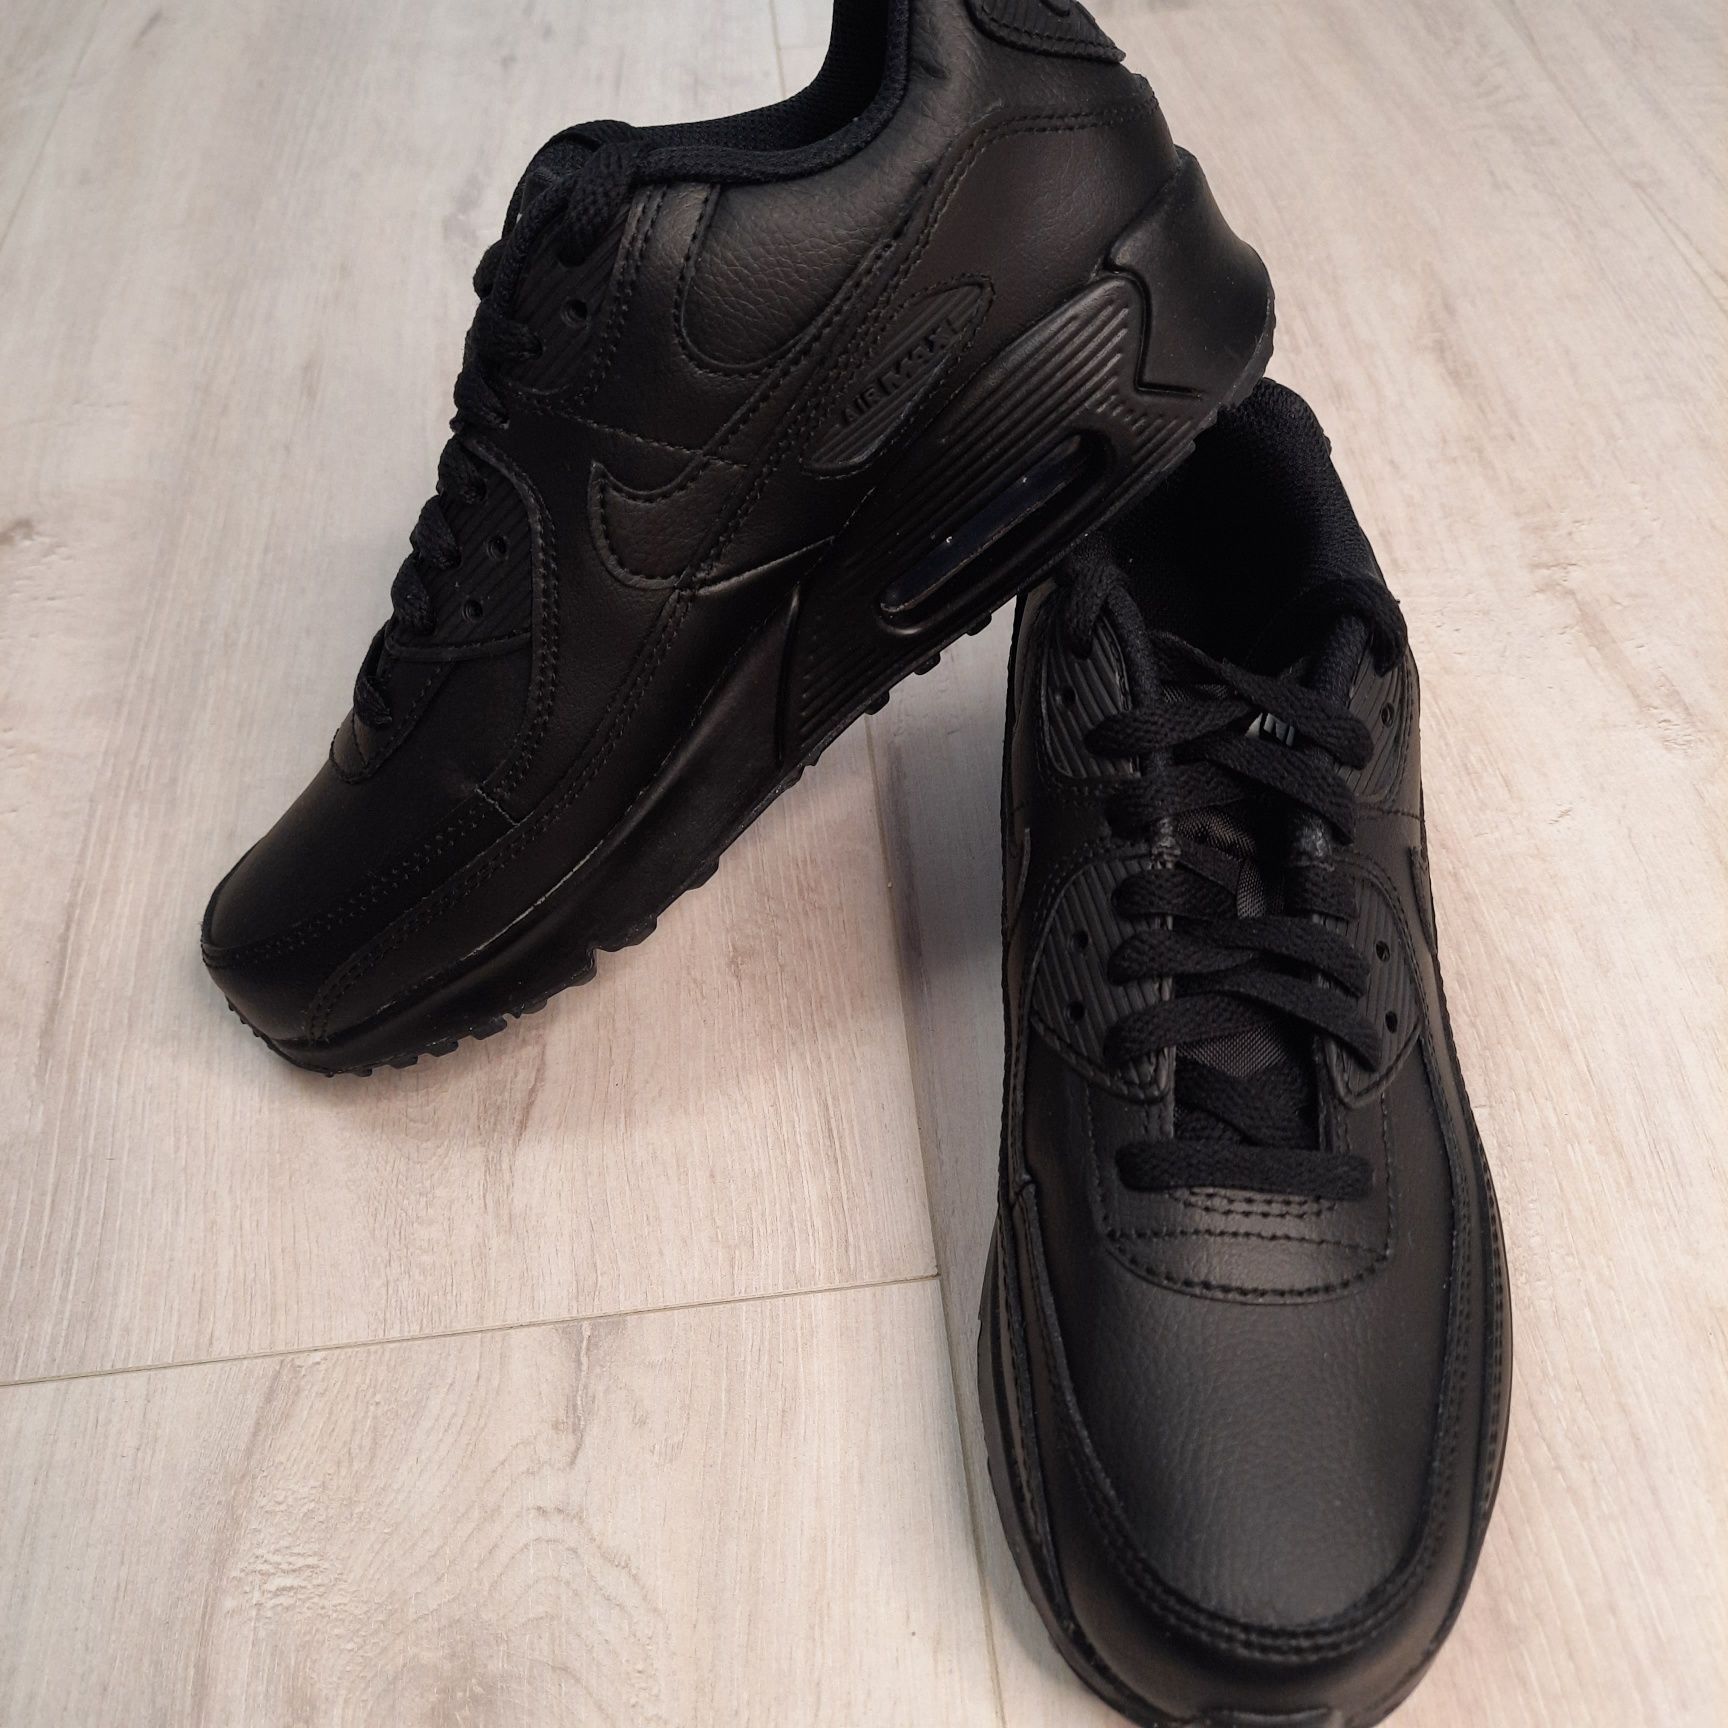 Оригінальні підліткові кросівки Nike Air Max 90 Ltr (gs) (CD6864-001)